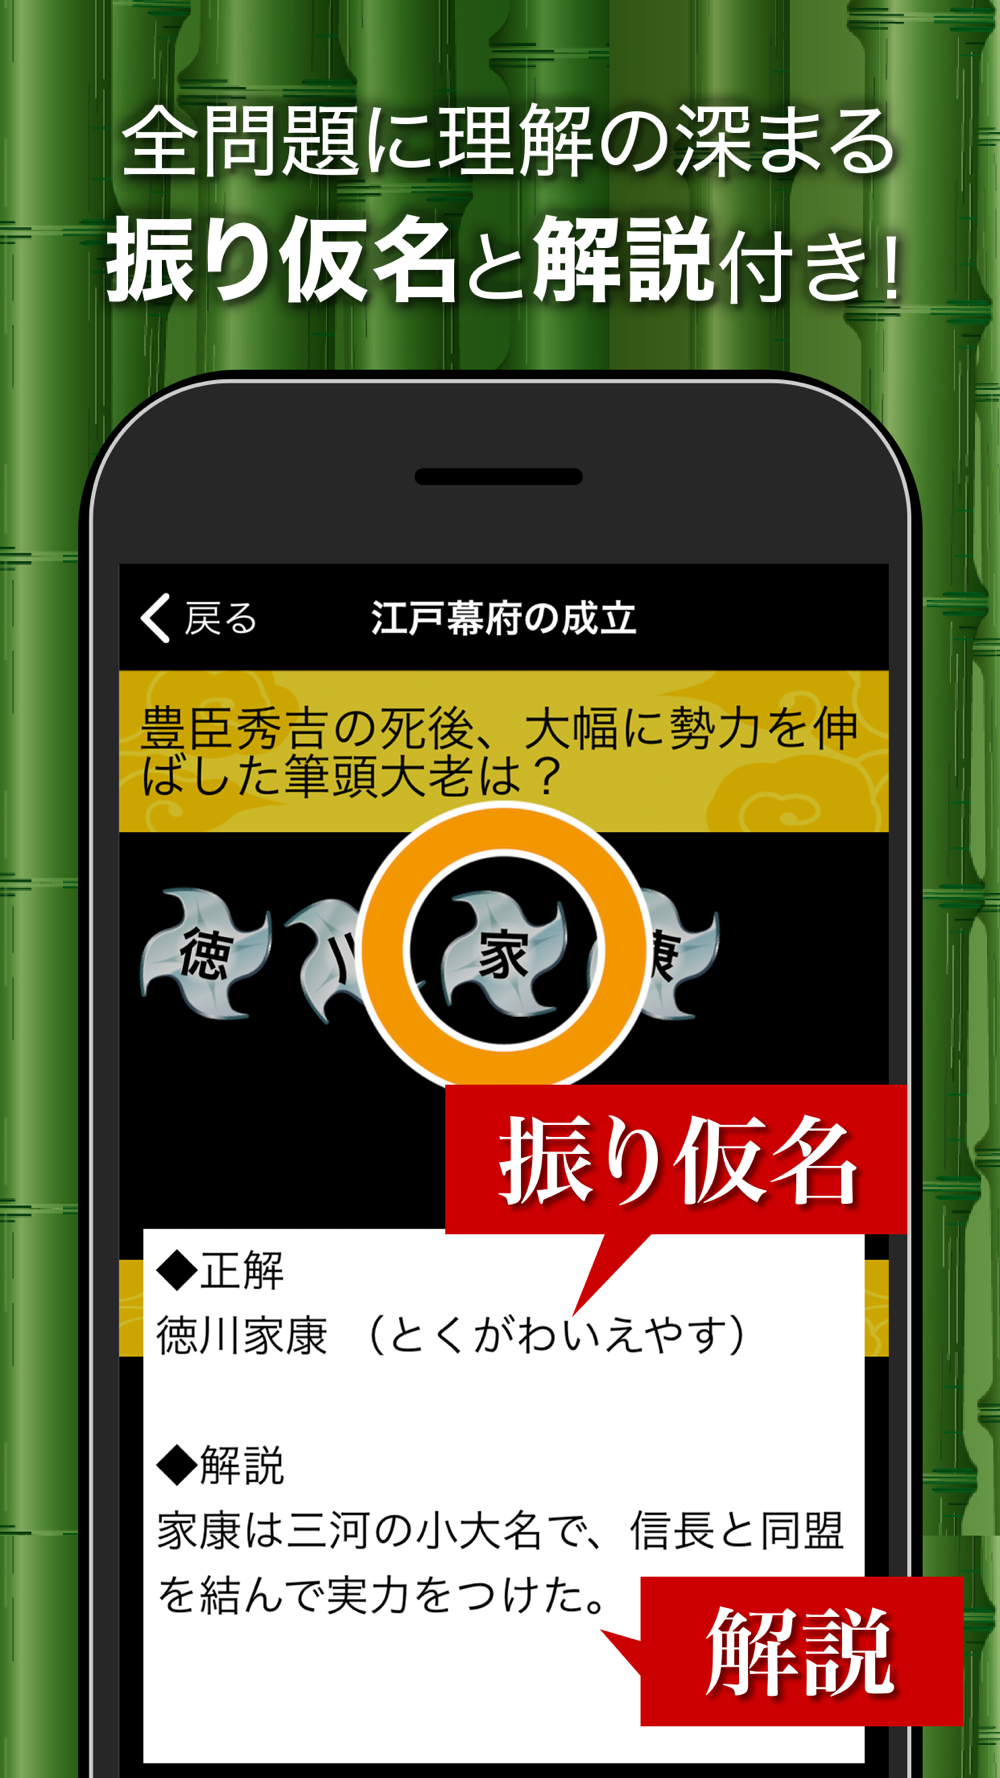 日本の歴史 日本史 一問一答 Free Download App For Iphone Steprimo Com